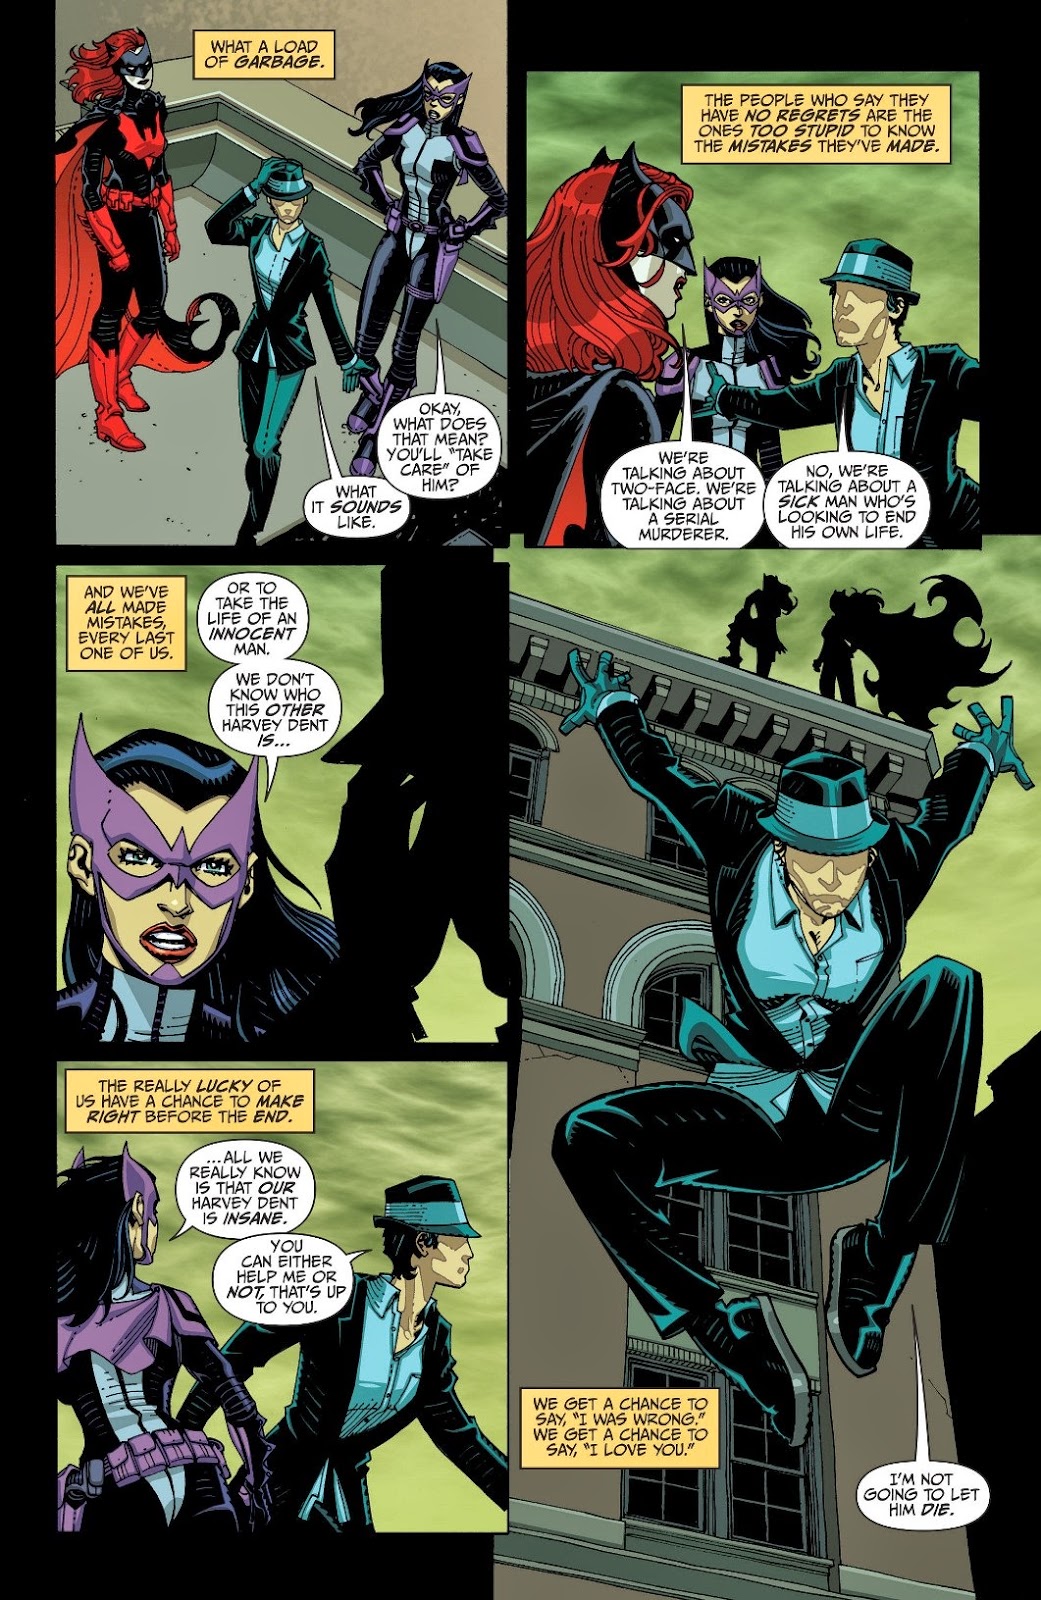 HEROIC TALES EPISODE #5 - Voodoo's Vendetta